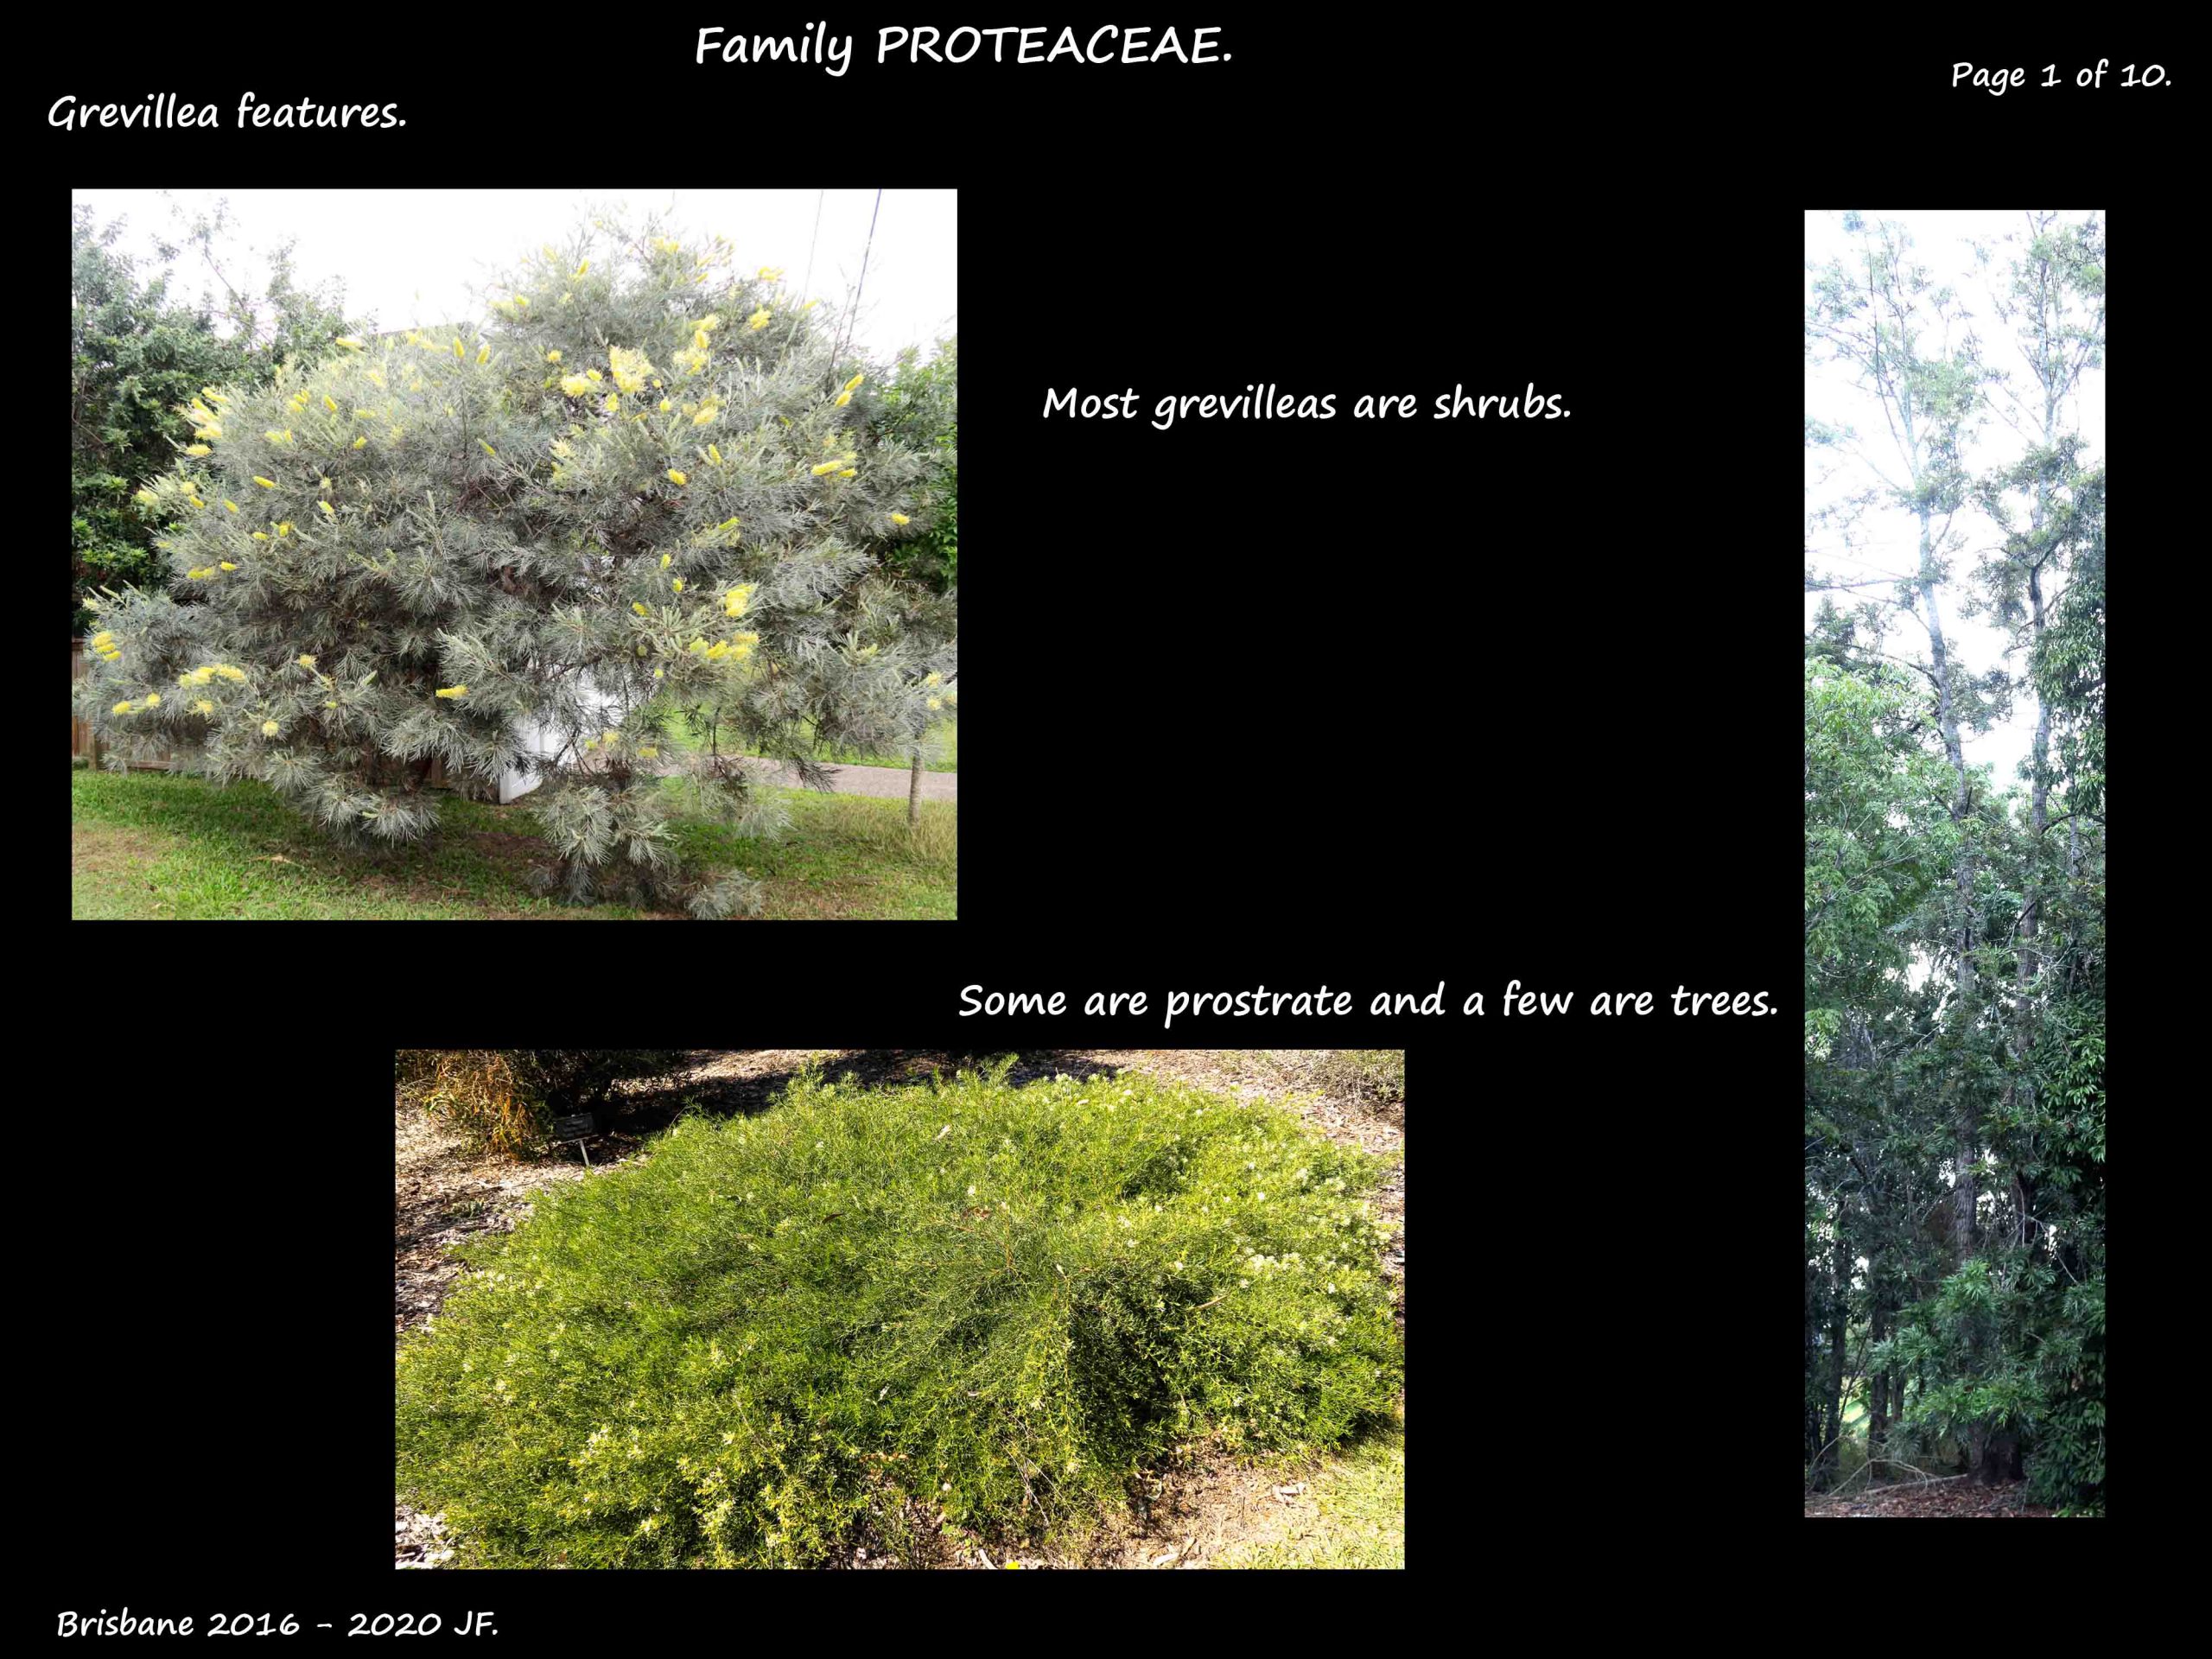 1 Grevillea shrub & tree